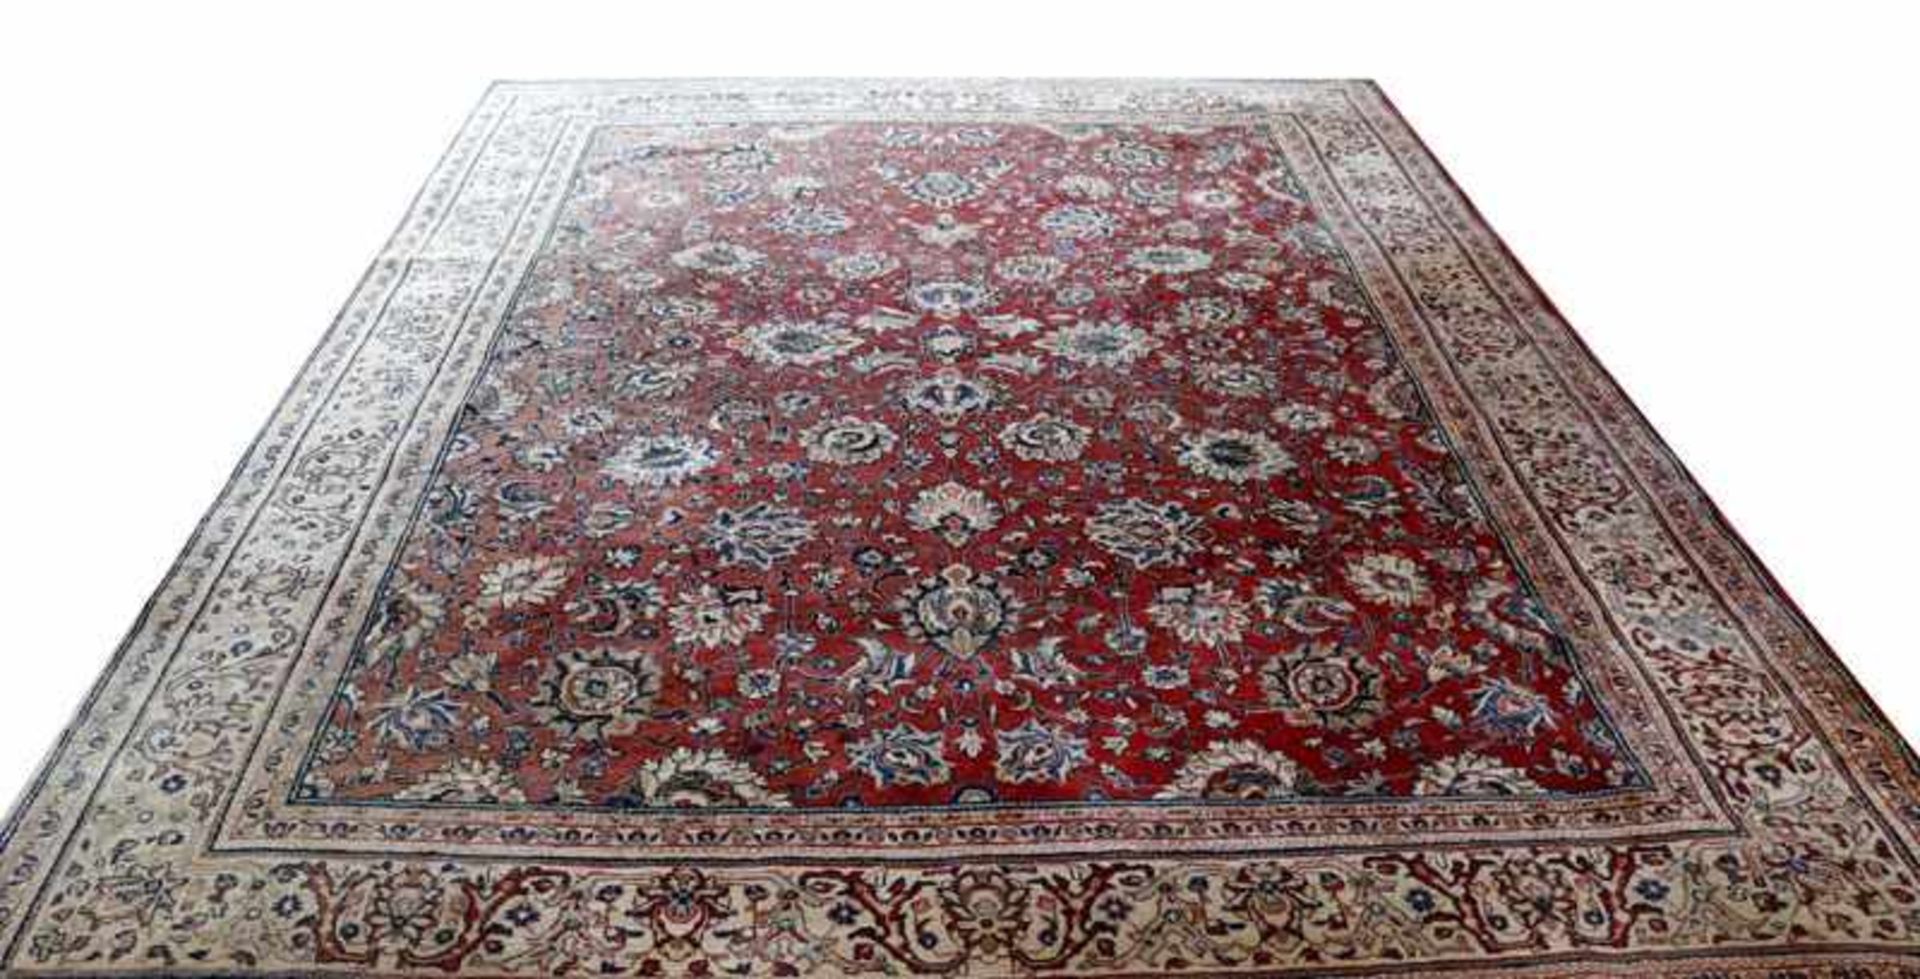 Teppich, Sarough, rot/blau/beige, teils verblasst, teils fleckig, Gebrauchsspuren, 350 cm x 260 cm